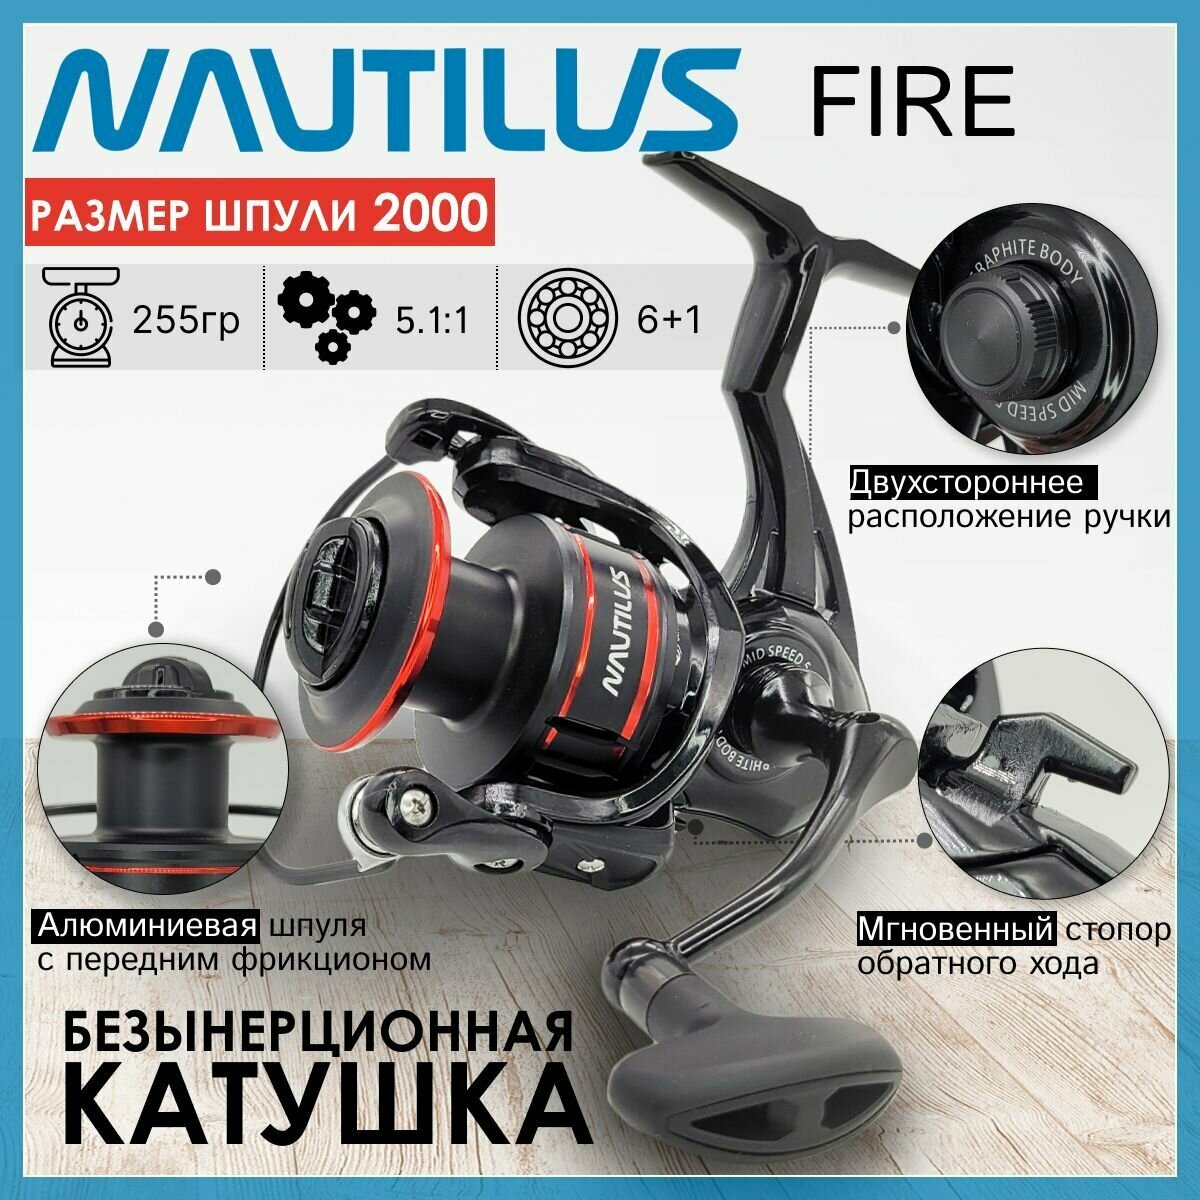 Катушка Nautilus FIRE 2000, с передним фрикционом